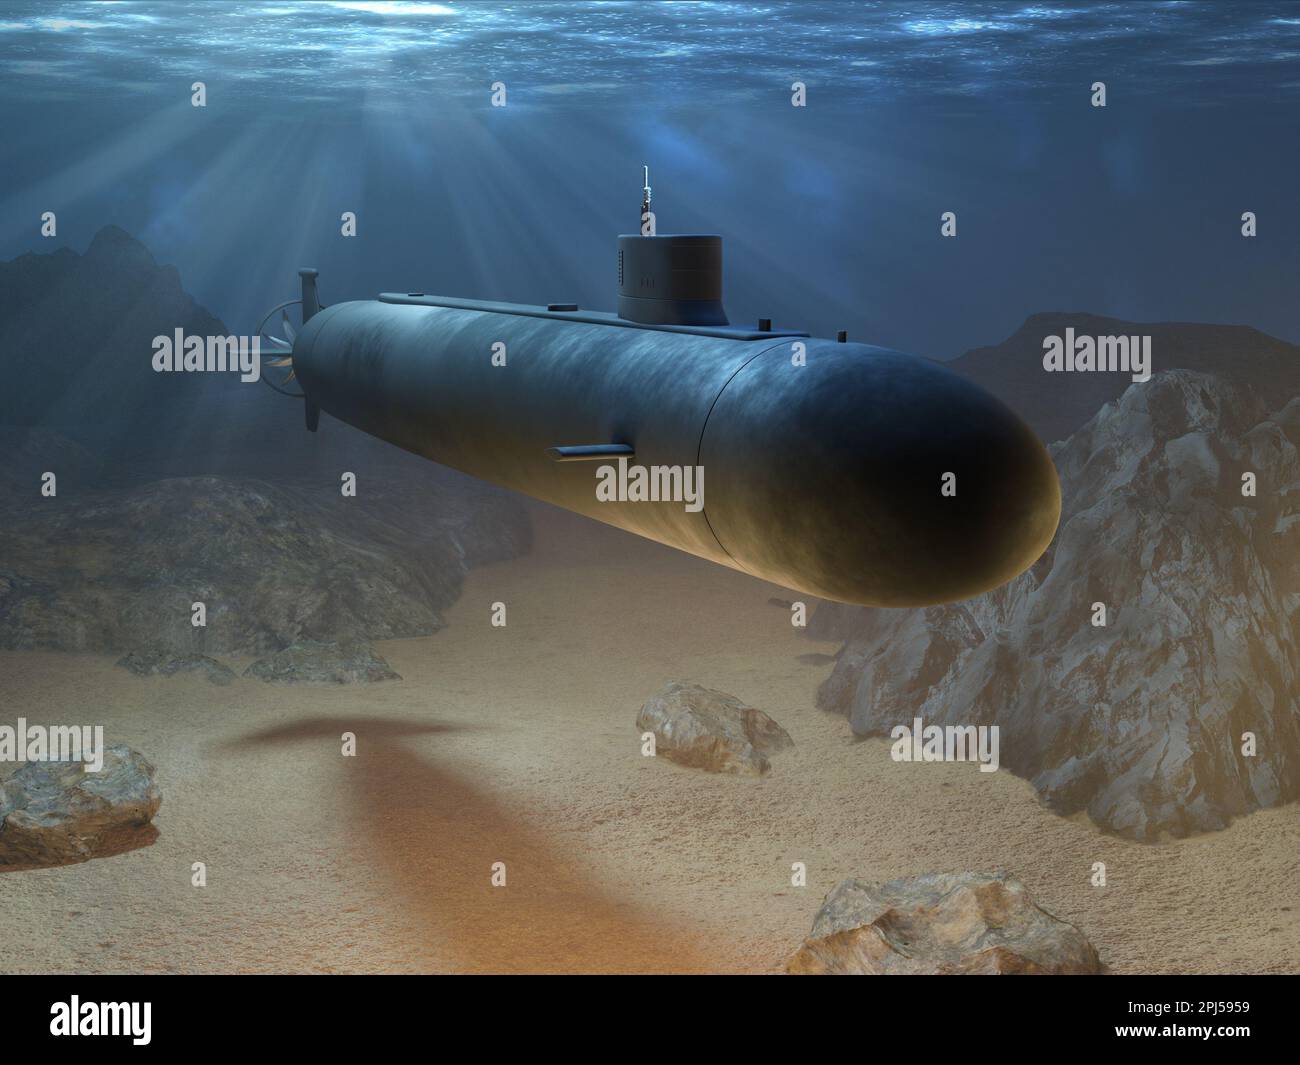 Ein Atom-U-Boot, das in der Tiefe des Ozeans unterwegs ist. Digitale Illustration, 3D-Rendering. Stockfoto